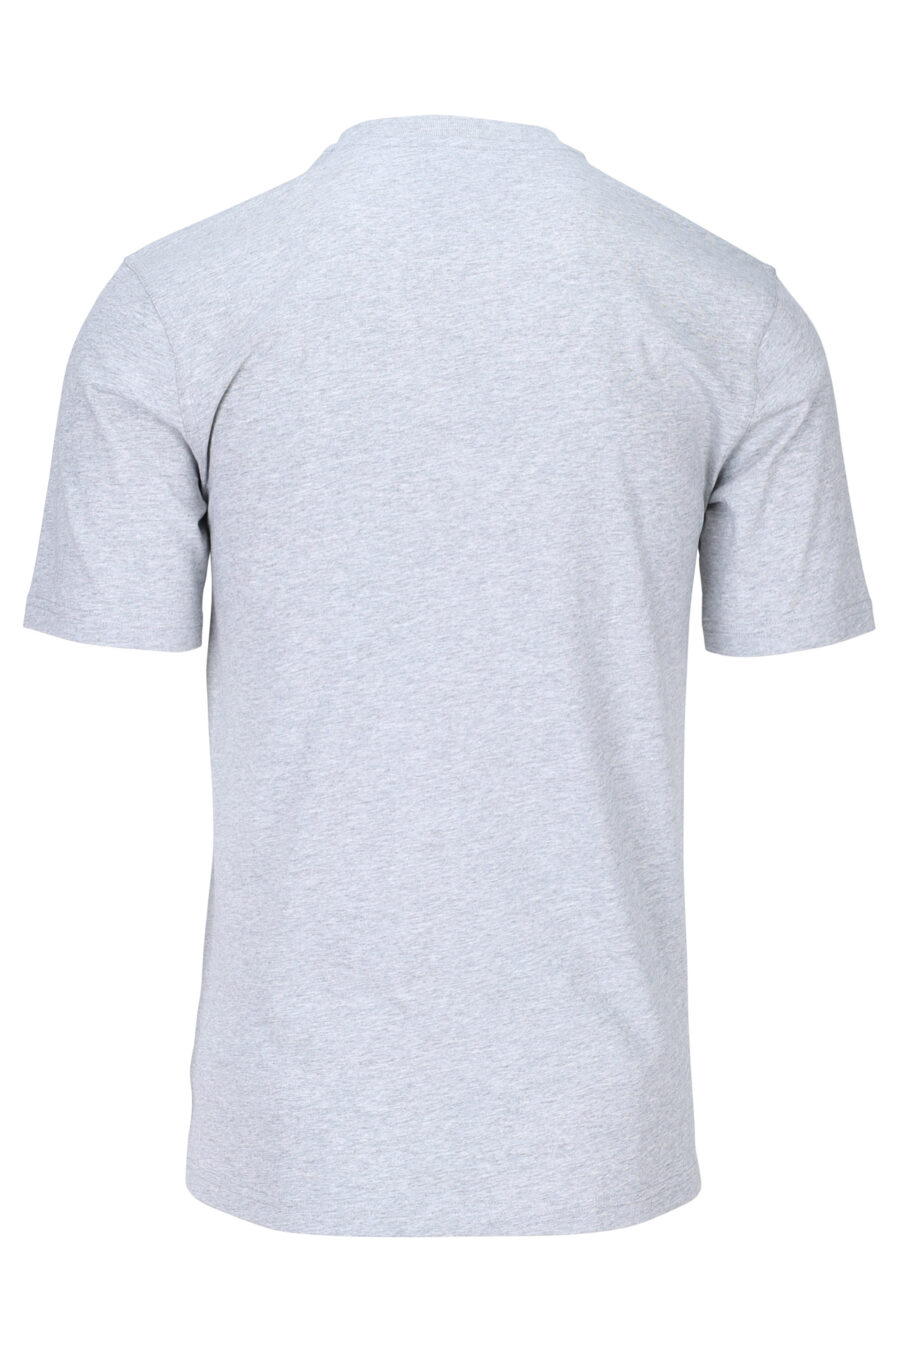 T-shirt gris avec minilogo "teddy tailor" - 667113150802 1